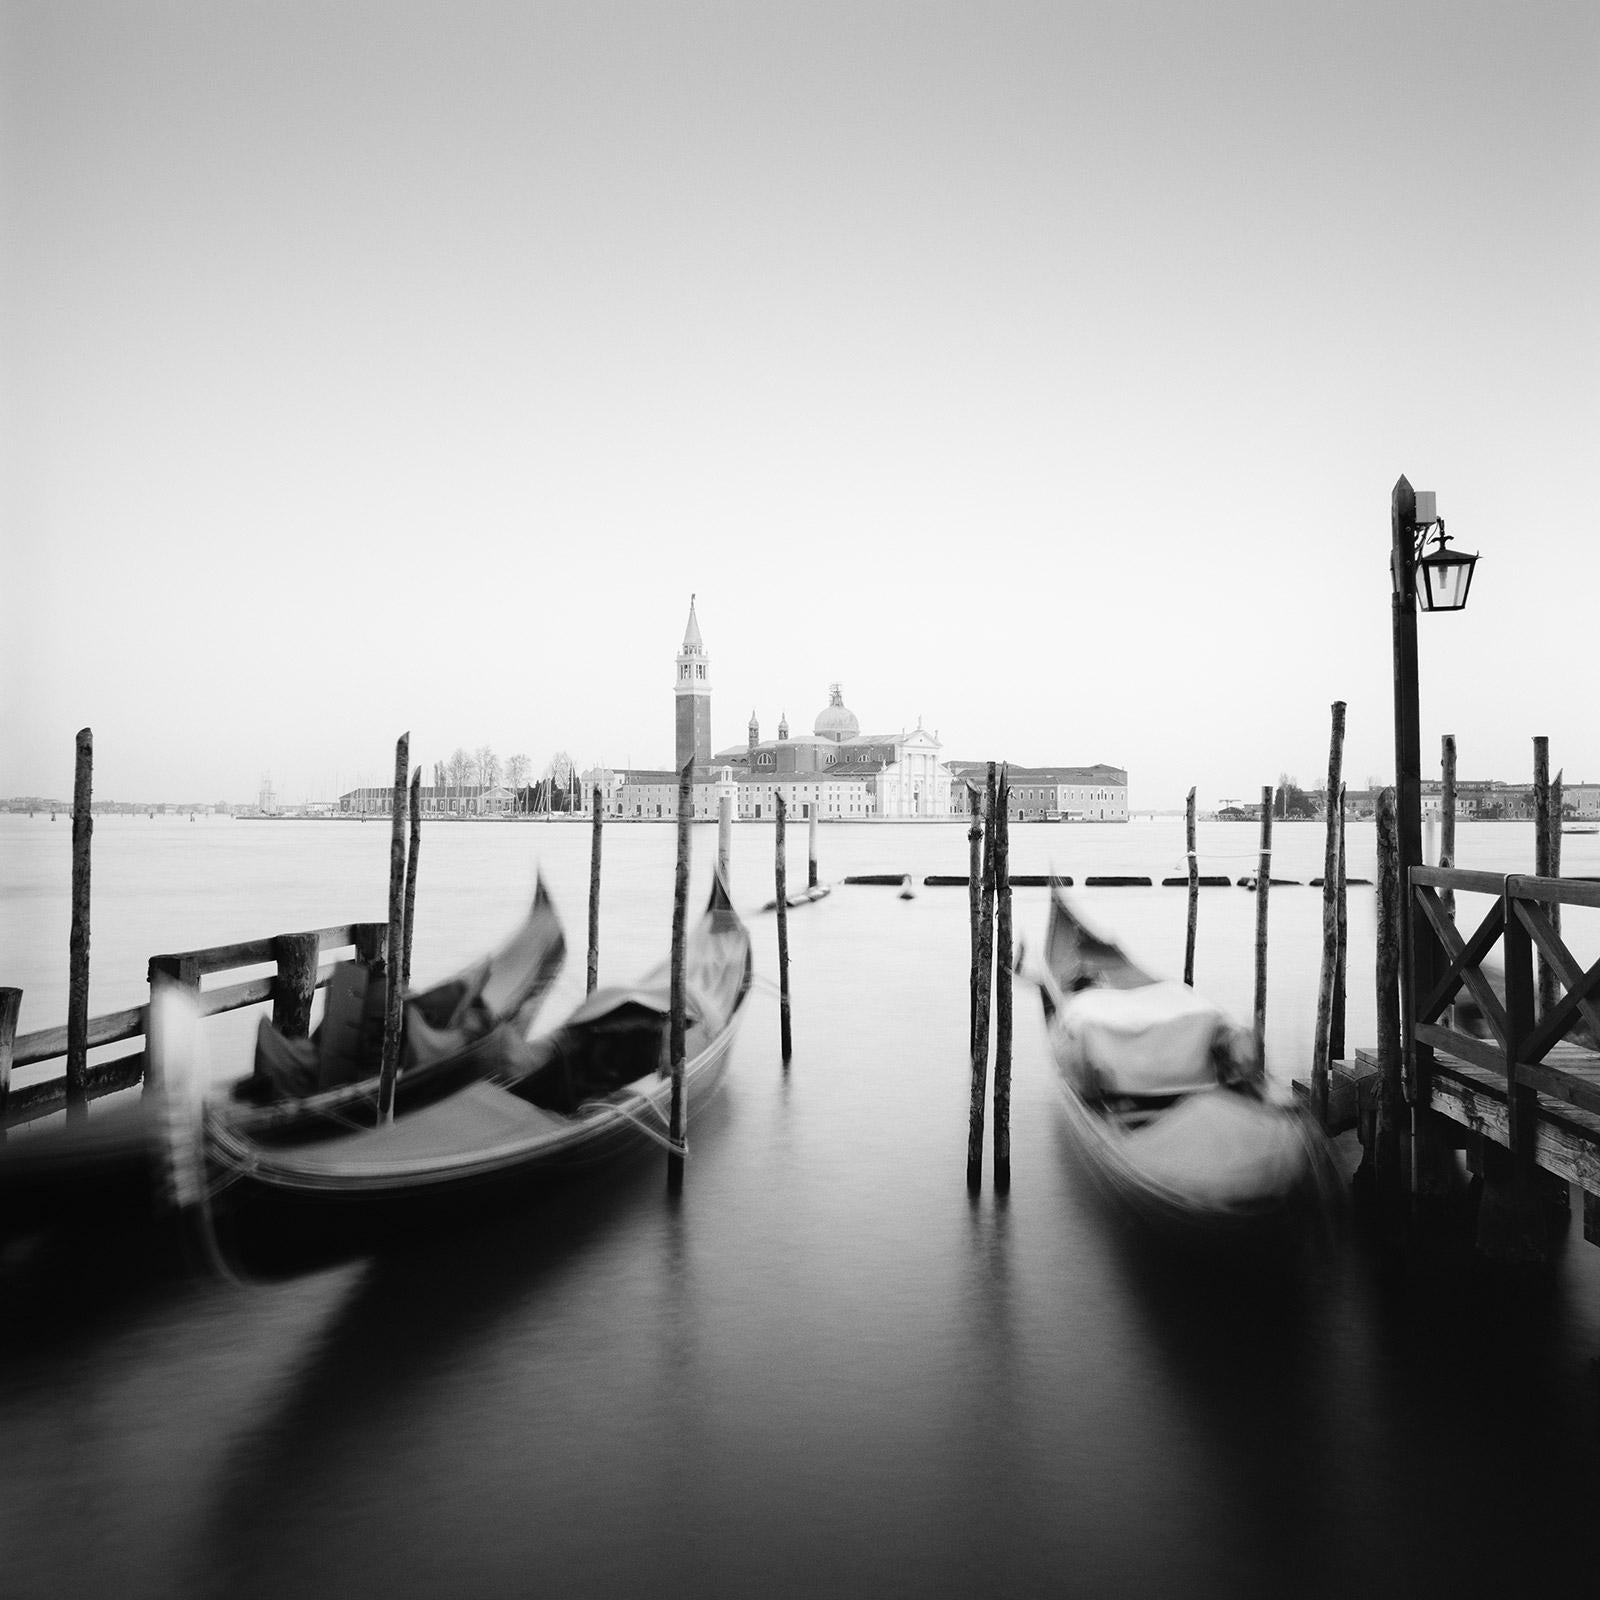 Gerald Berghammer Black and White Photograph - Santa Maria della Salute, Gondola, Venice, black and white cityscape photography